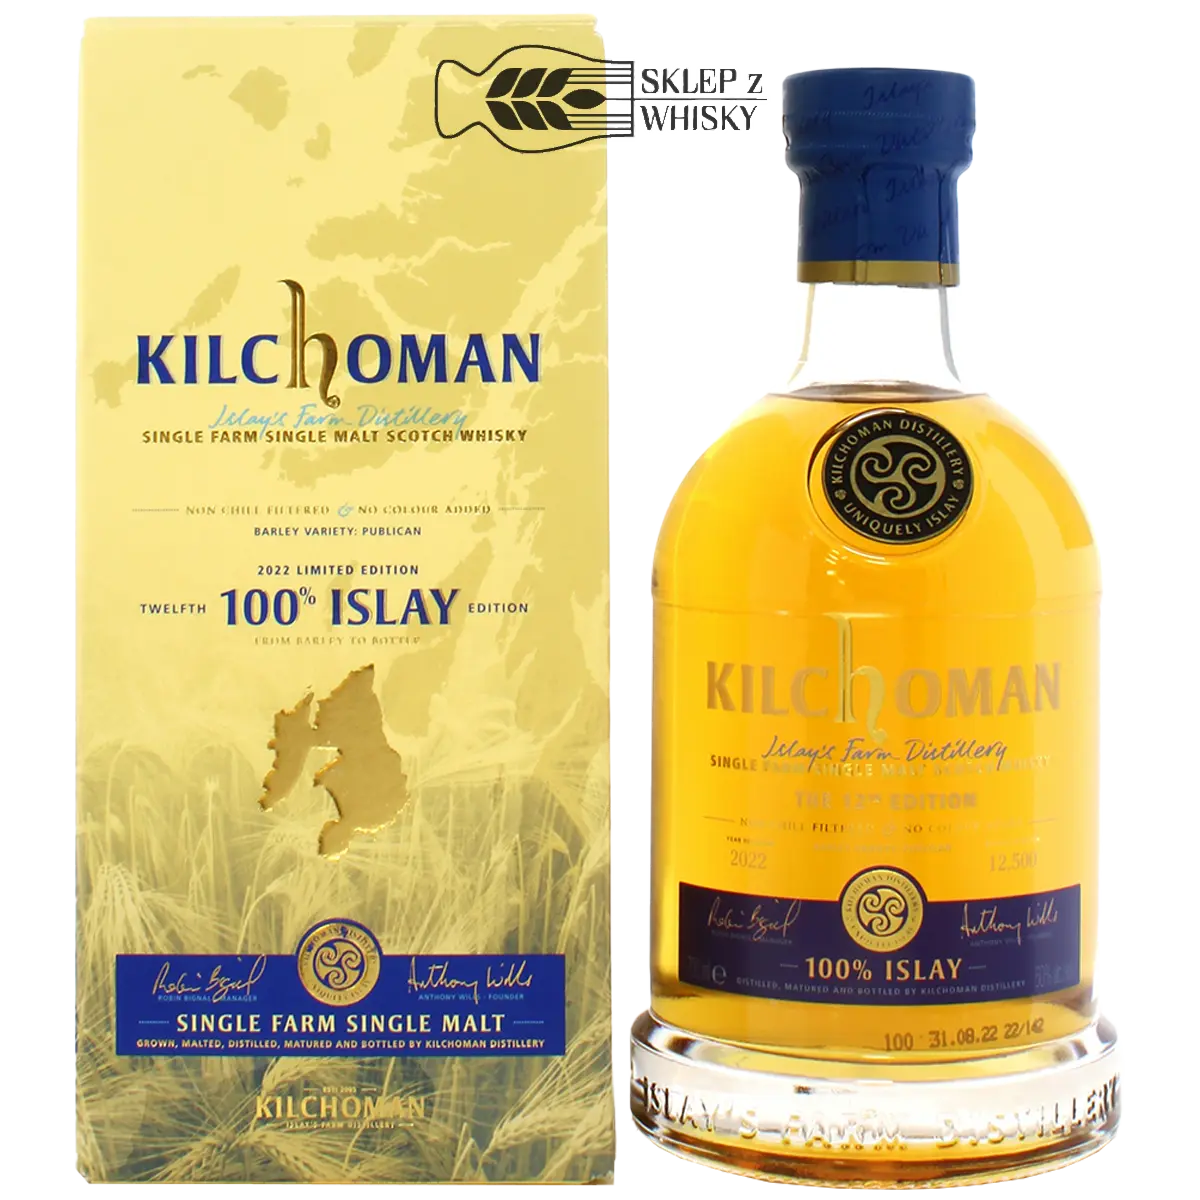 Kilchoman 100% Islay 12th Edition - szkocka whisky single malt, z regionu Islay, 700 ml, w pudełku